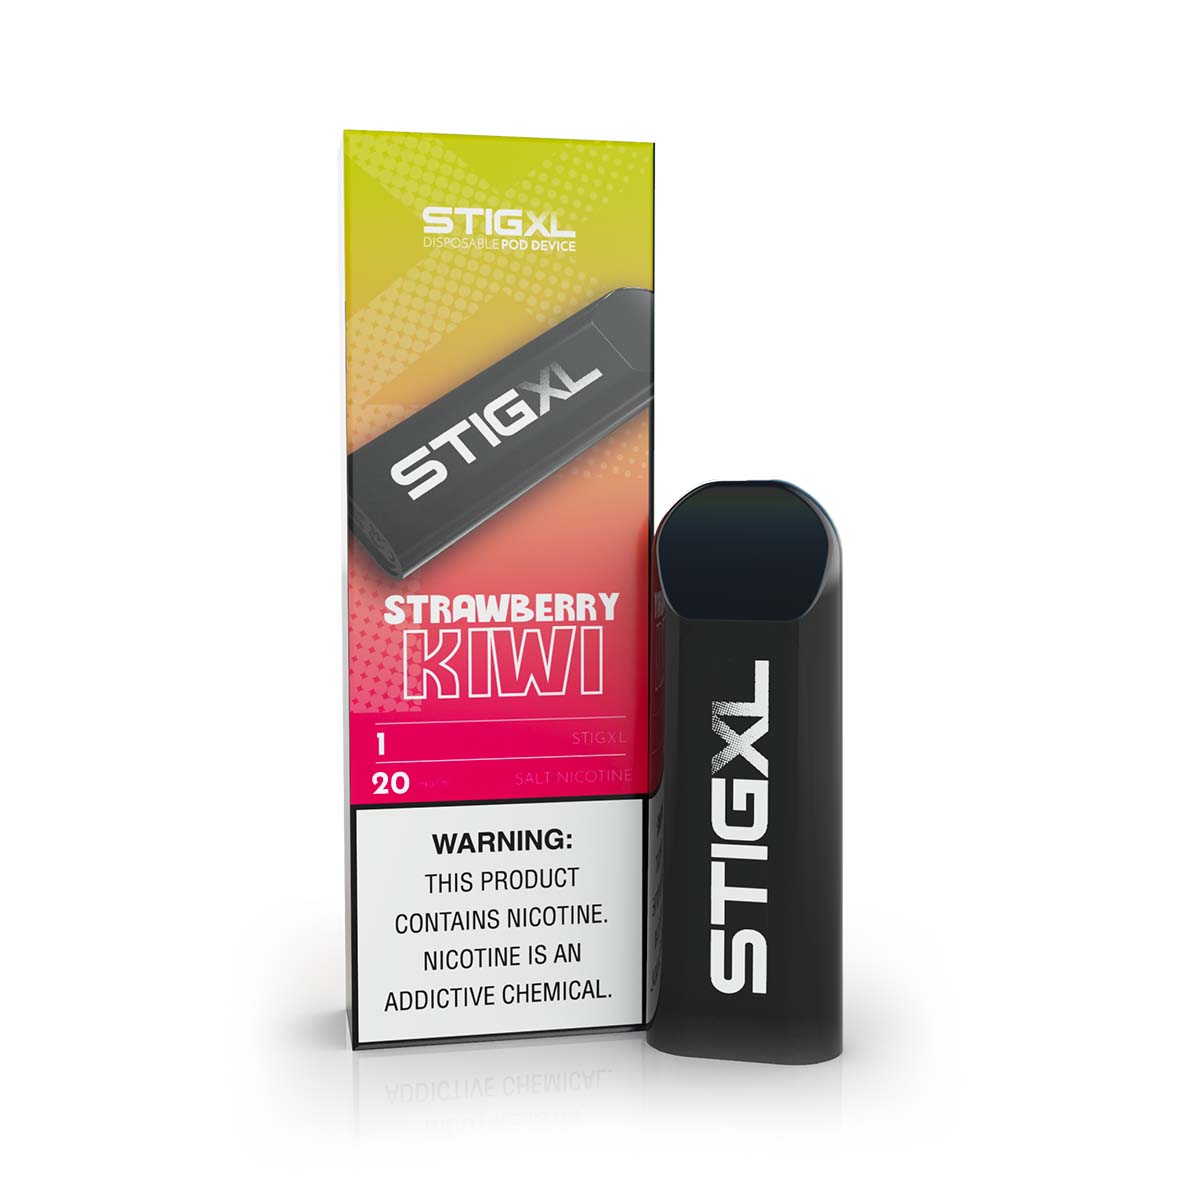 Stig XL Strawberry Kiwi